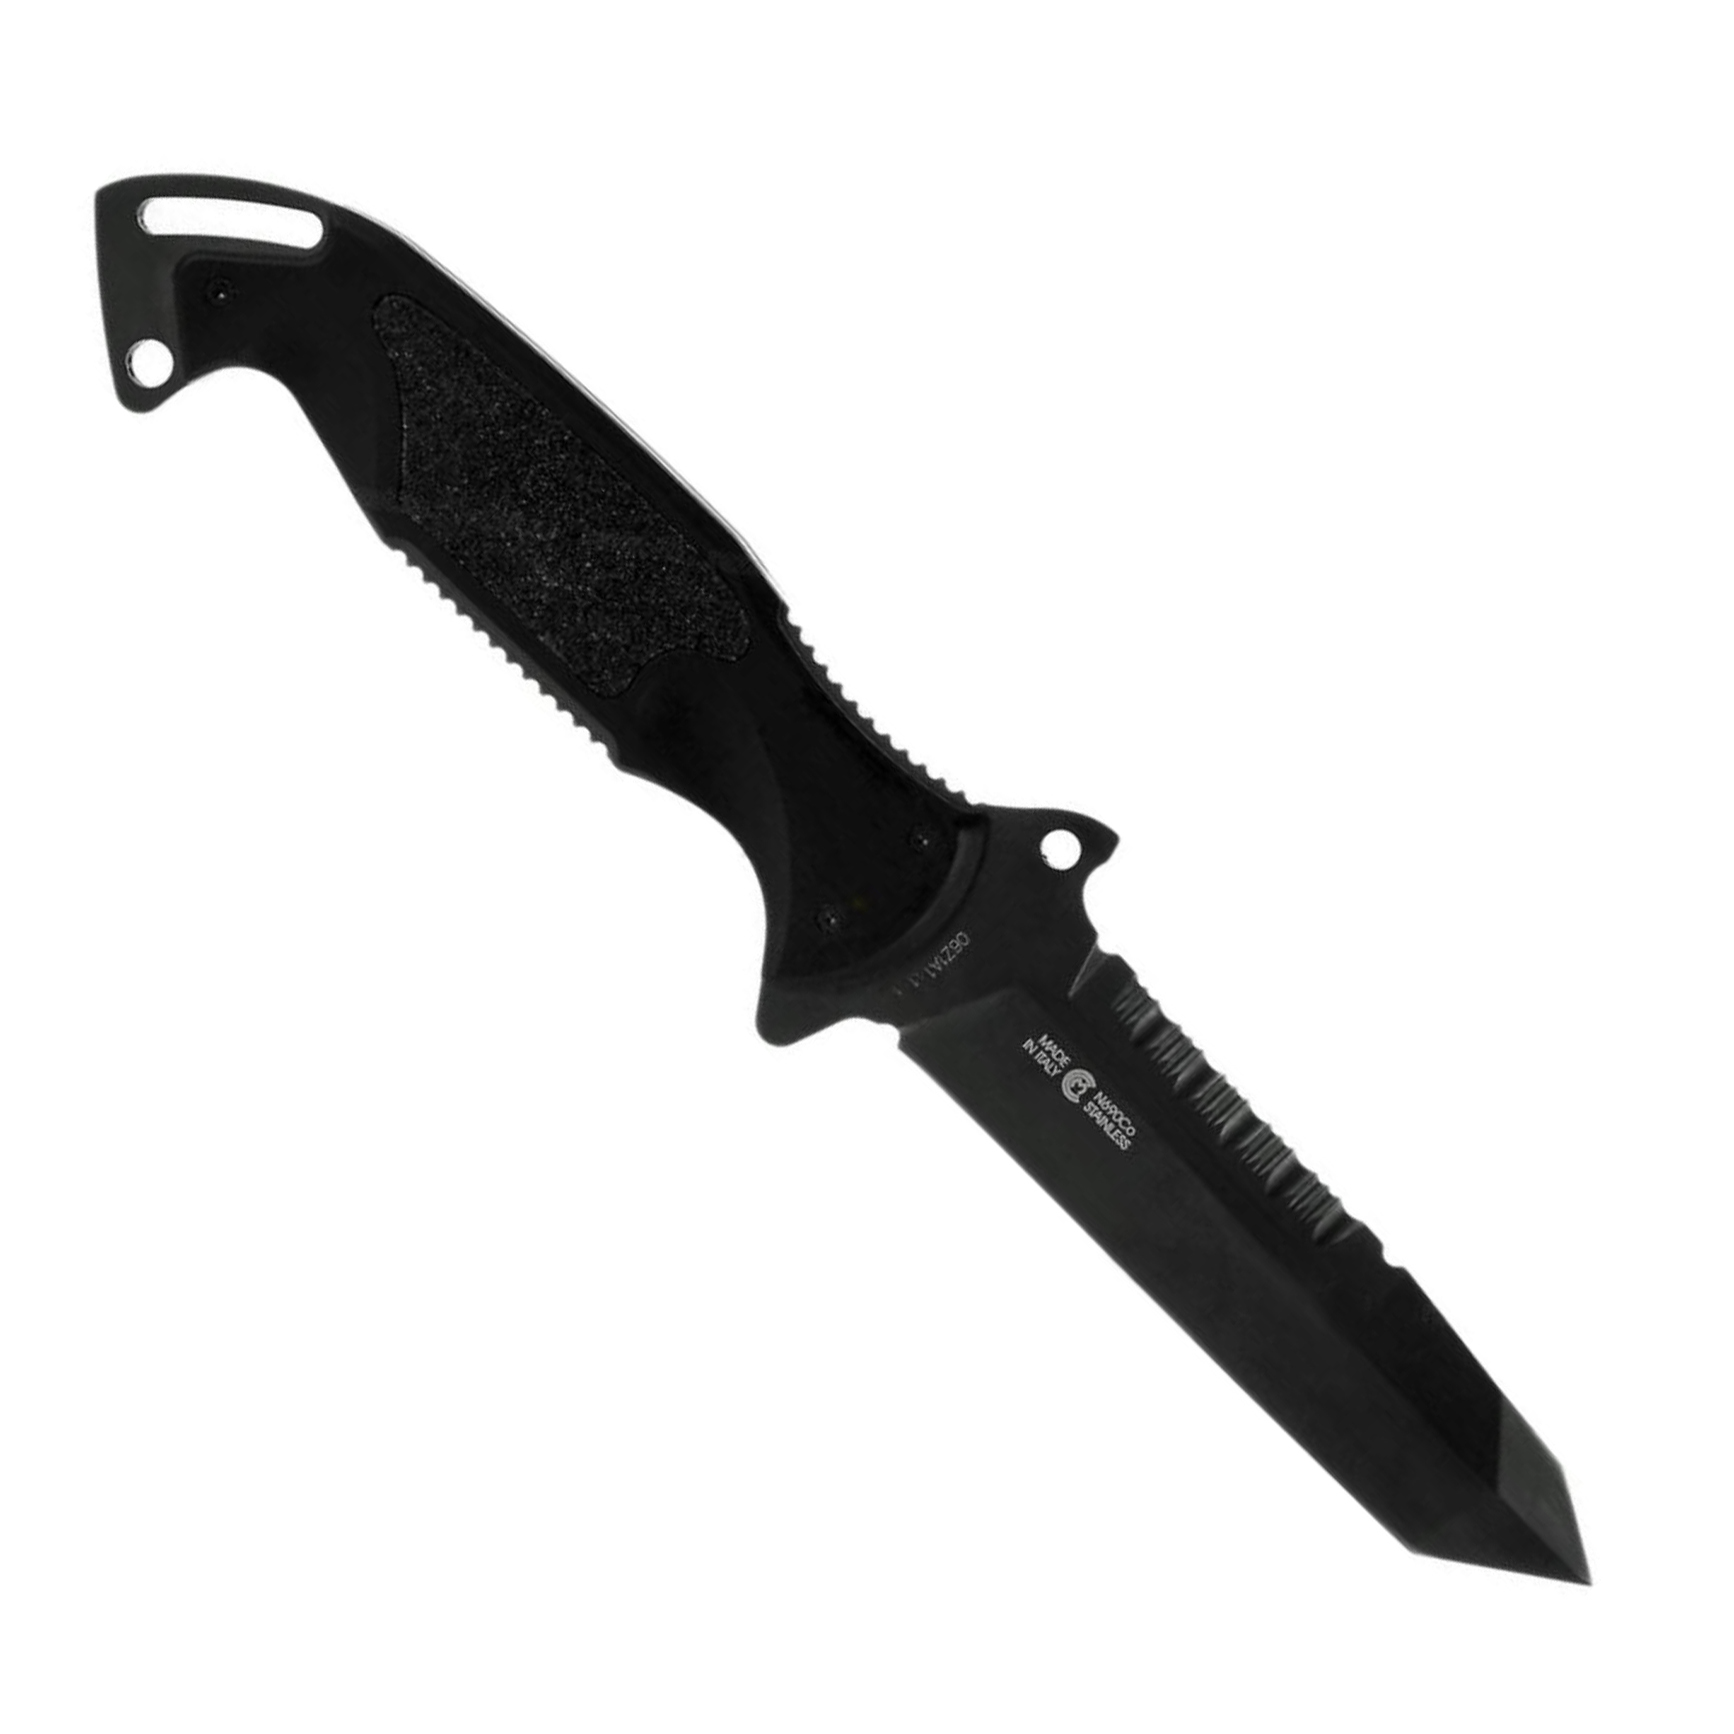 фото Нож с фиксированным клинком remington зулу i (zulu) rm\895ft tanto dlc, сталь 440c dlc, алюминий